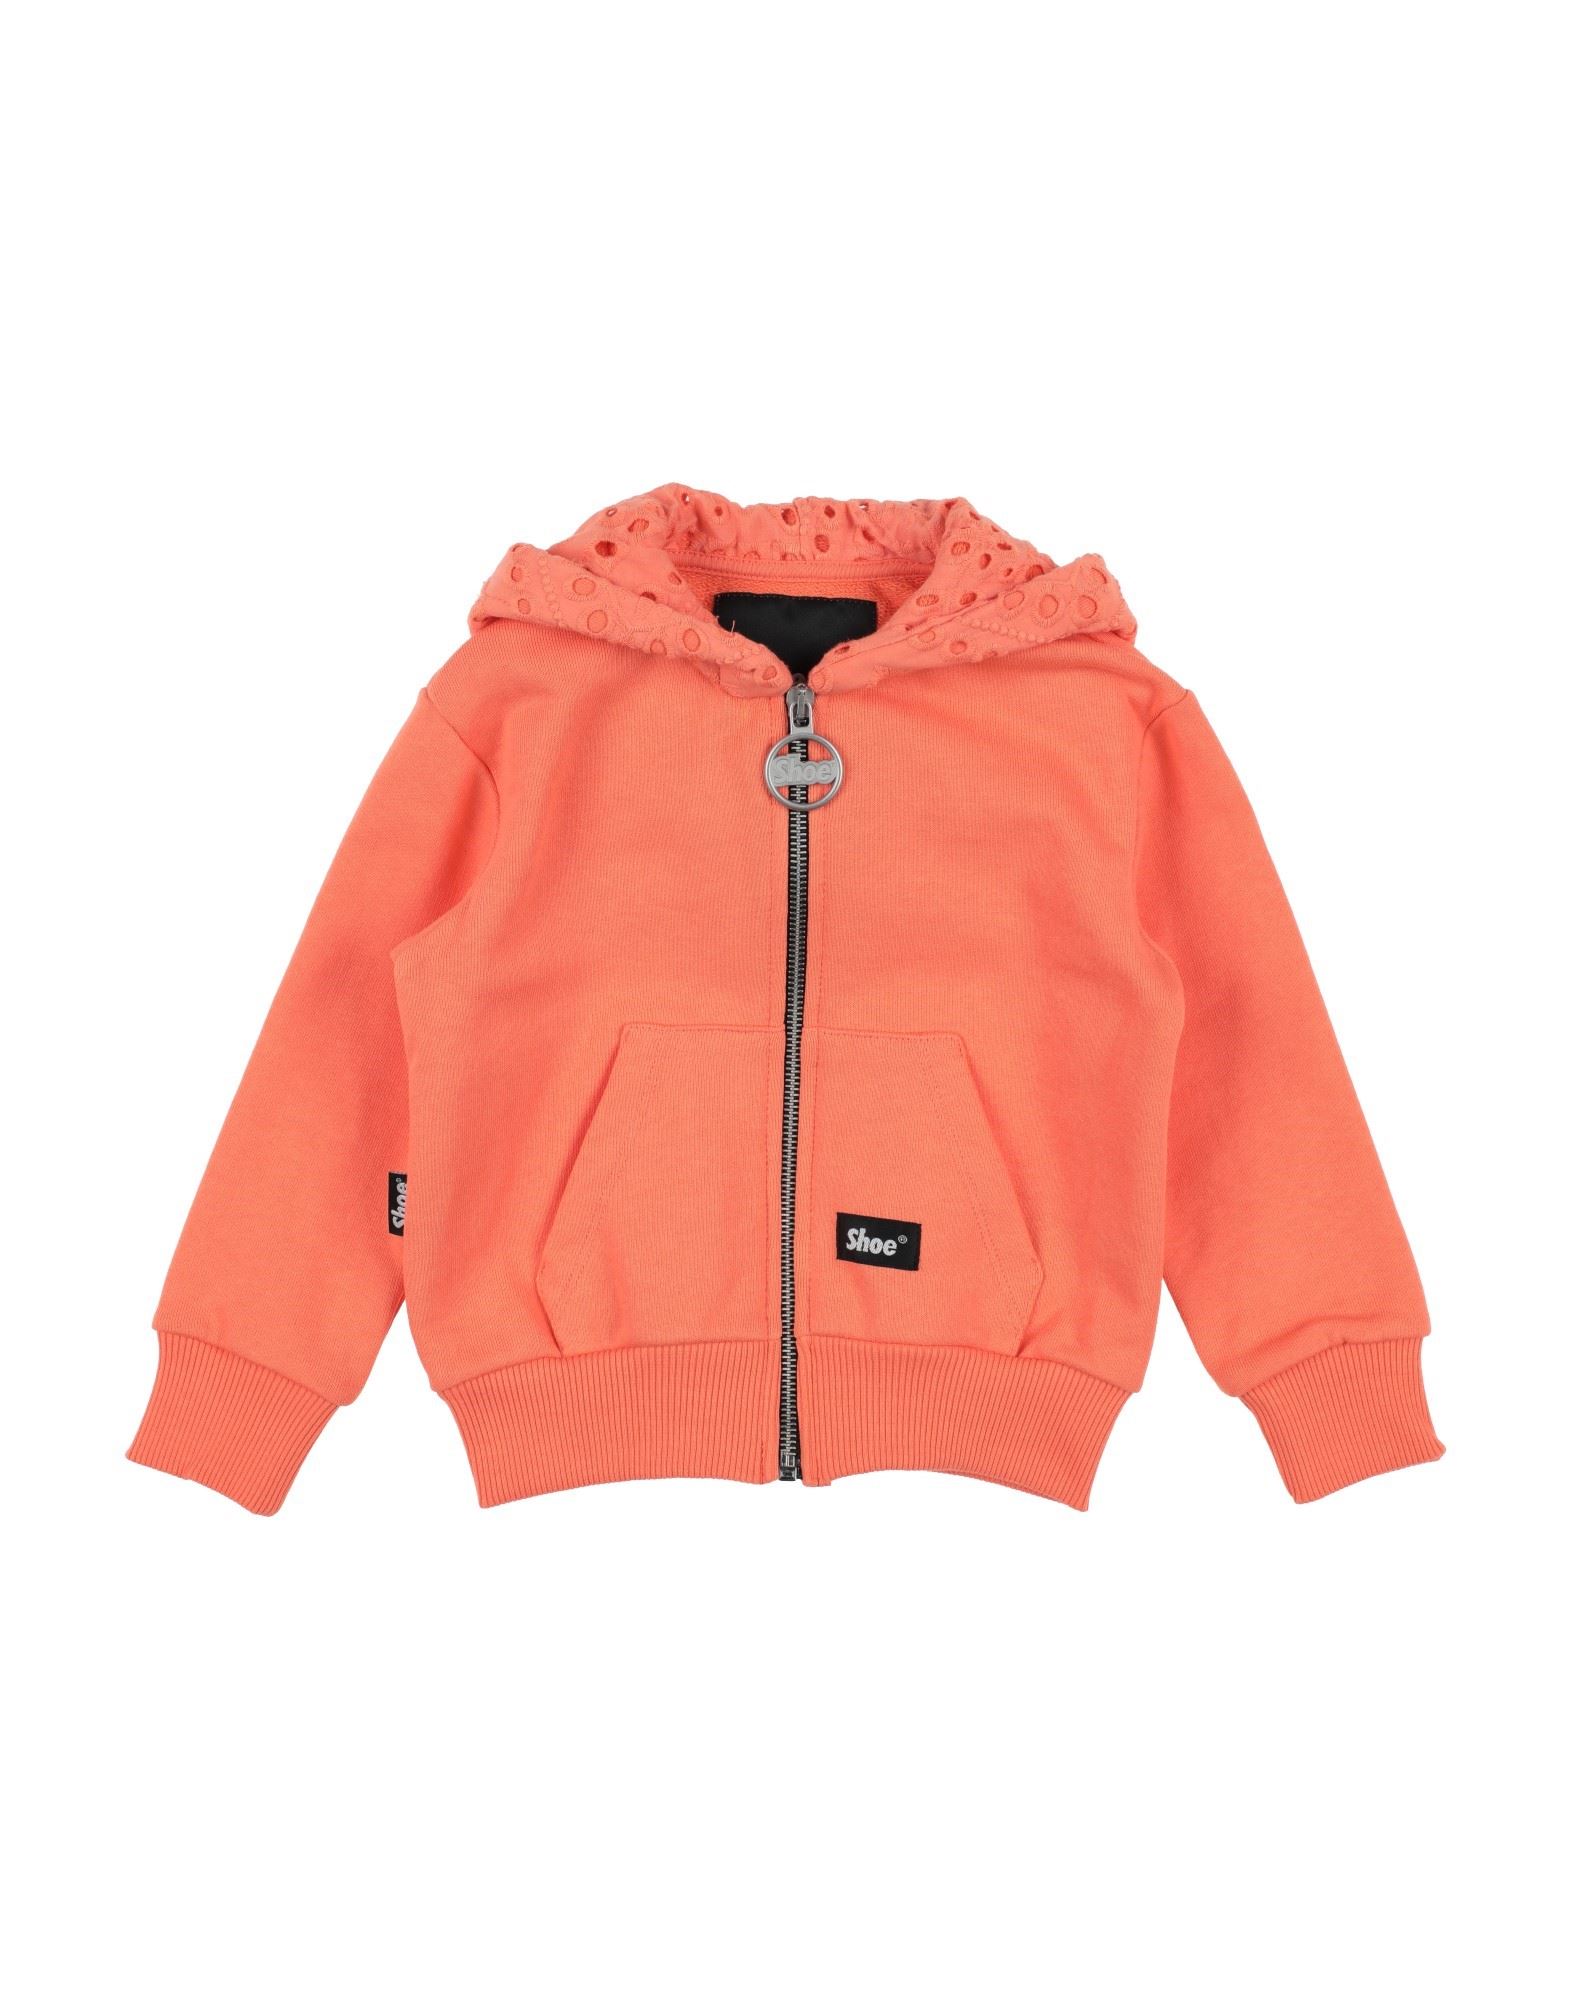 Shoe® Kids' Shoe Toddler Girl Sweatshirt Orange Size 3 Cotton